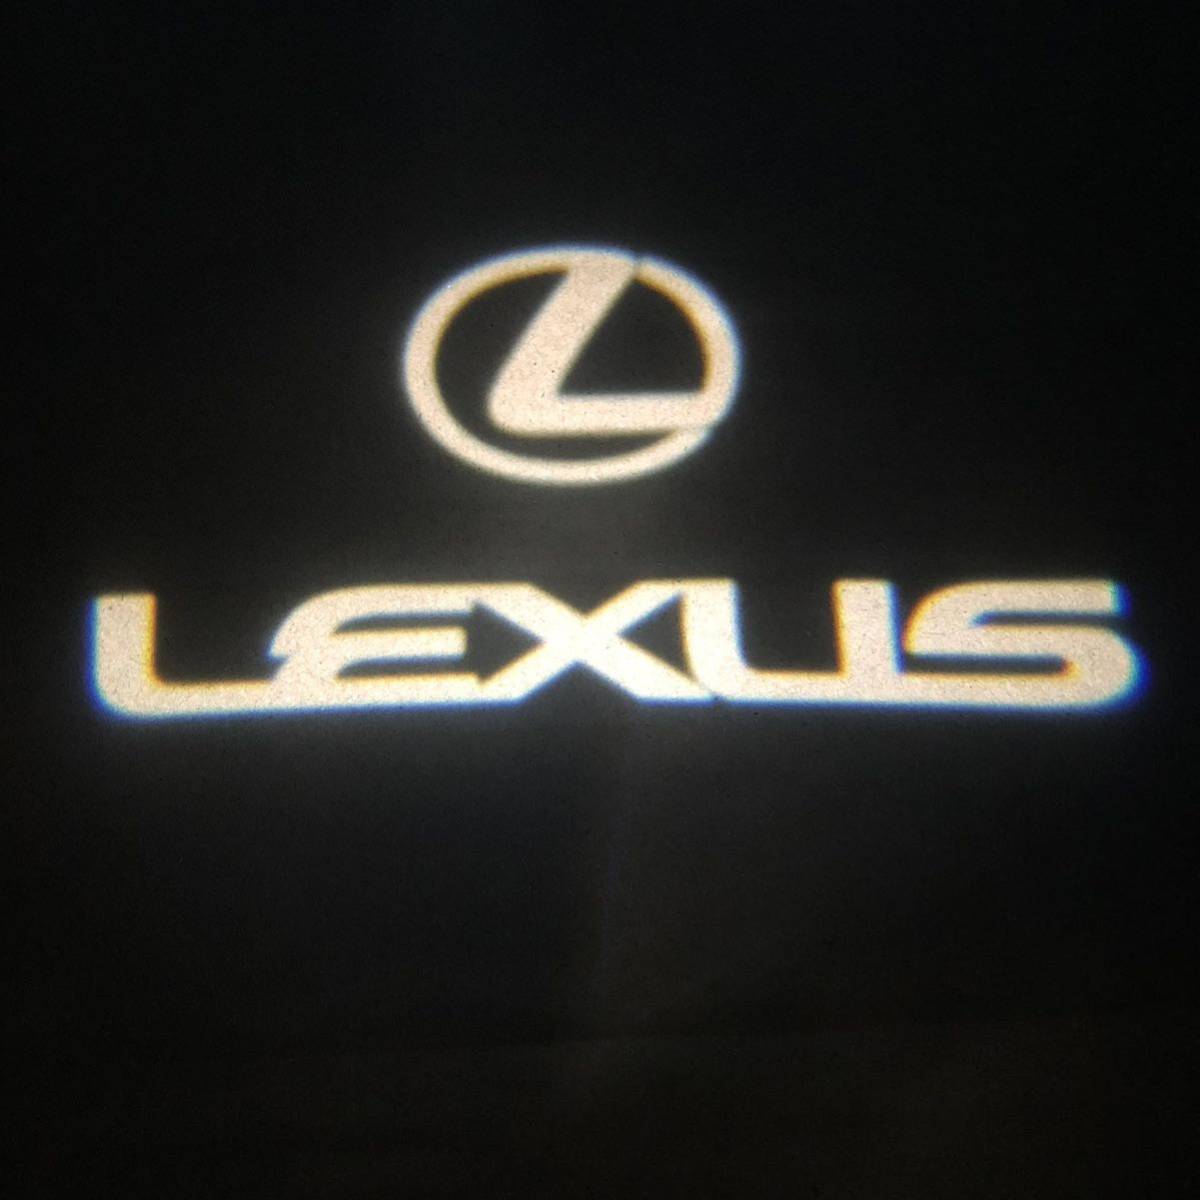 レクサス LEXUS カーテシランプ【Z81】_画像1